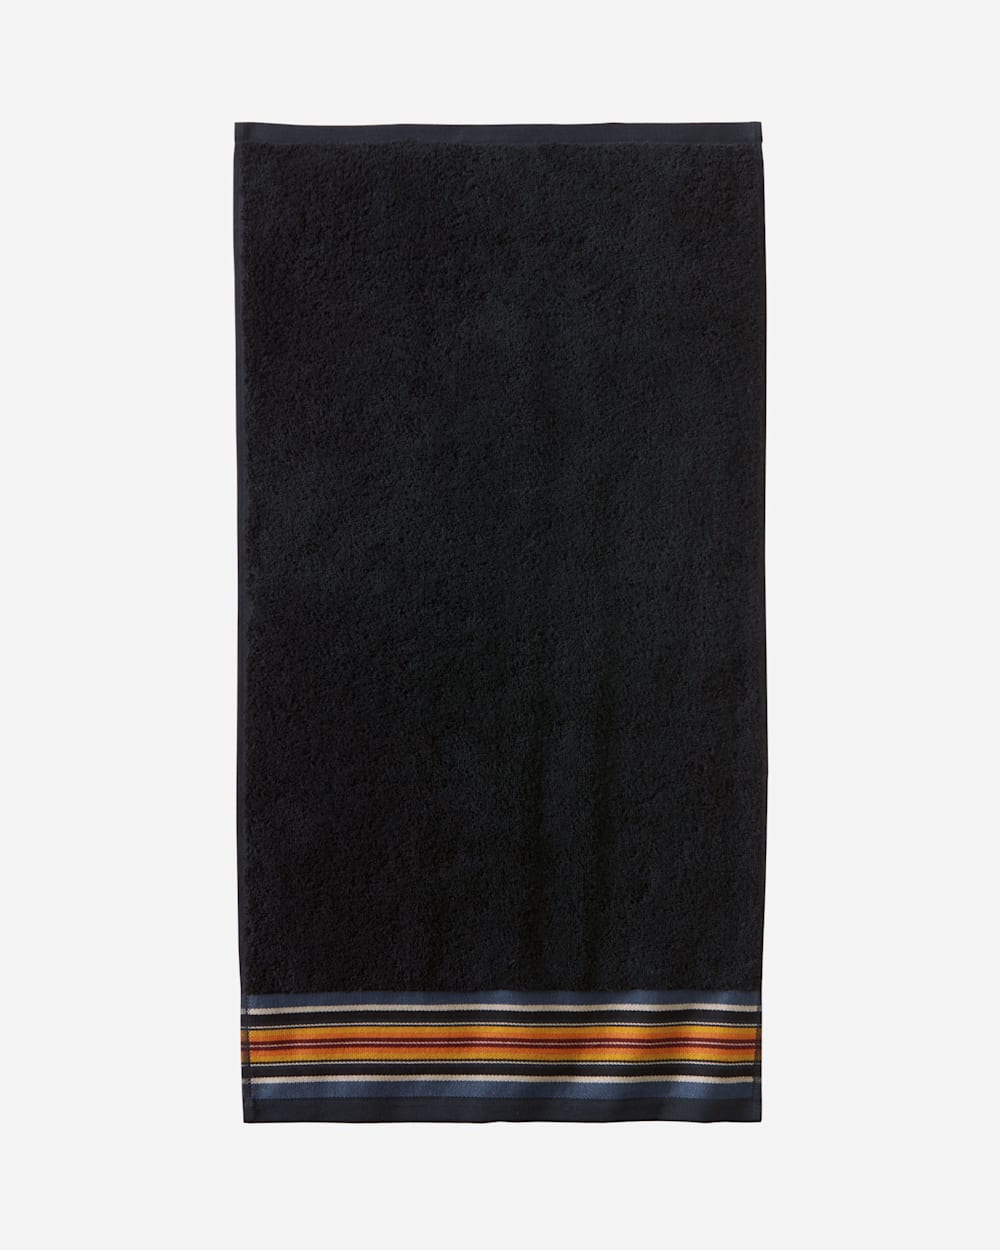 ALTERNATE VIEW OF SERAPE TOWEL SET IN BLACK image number 2